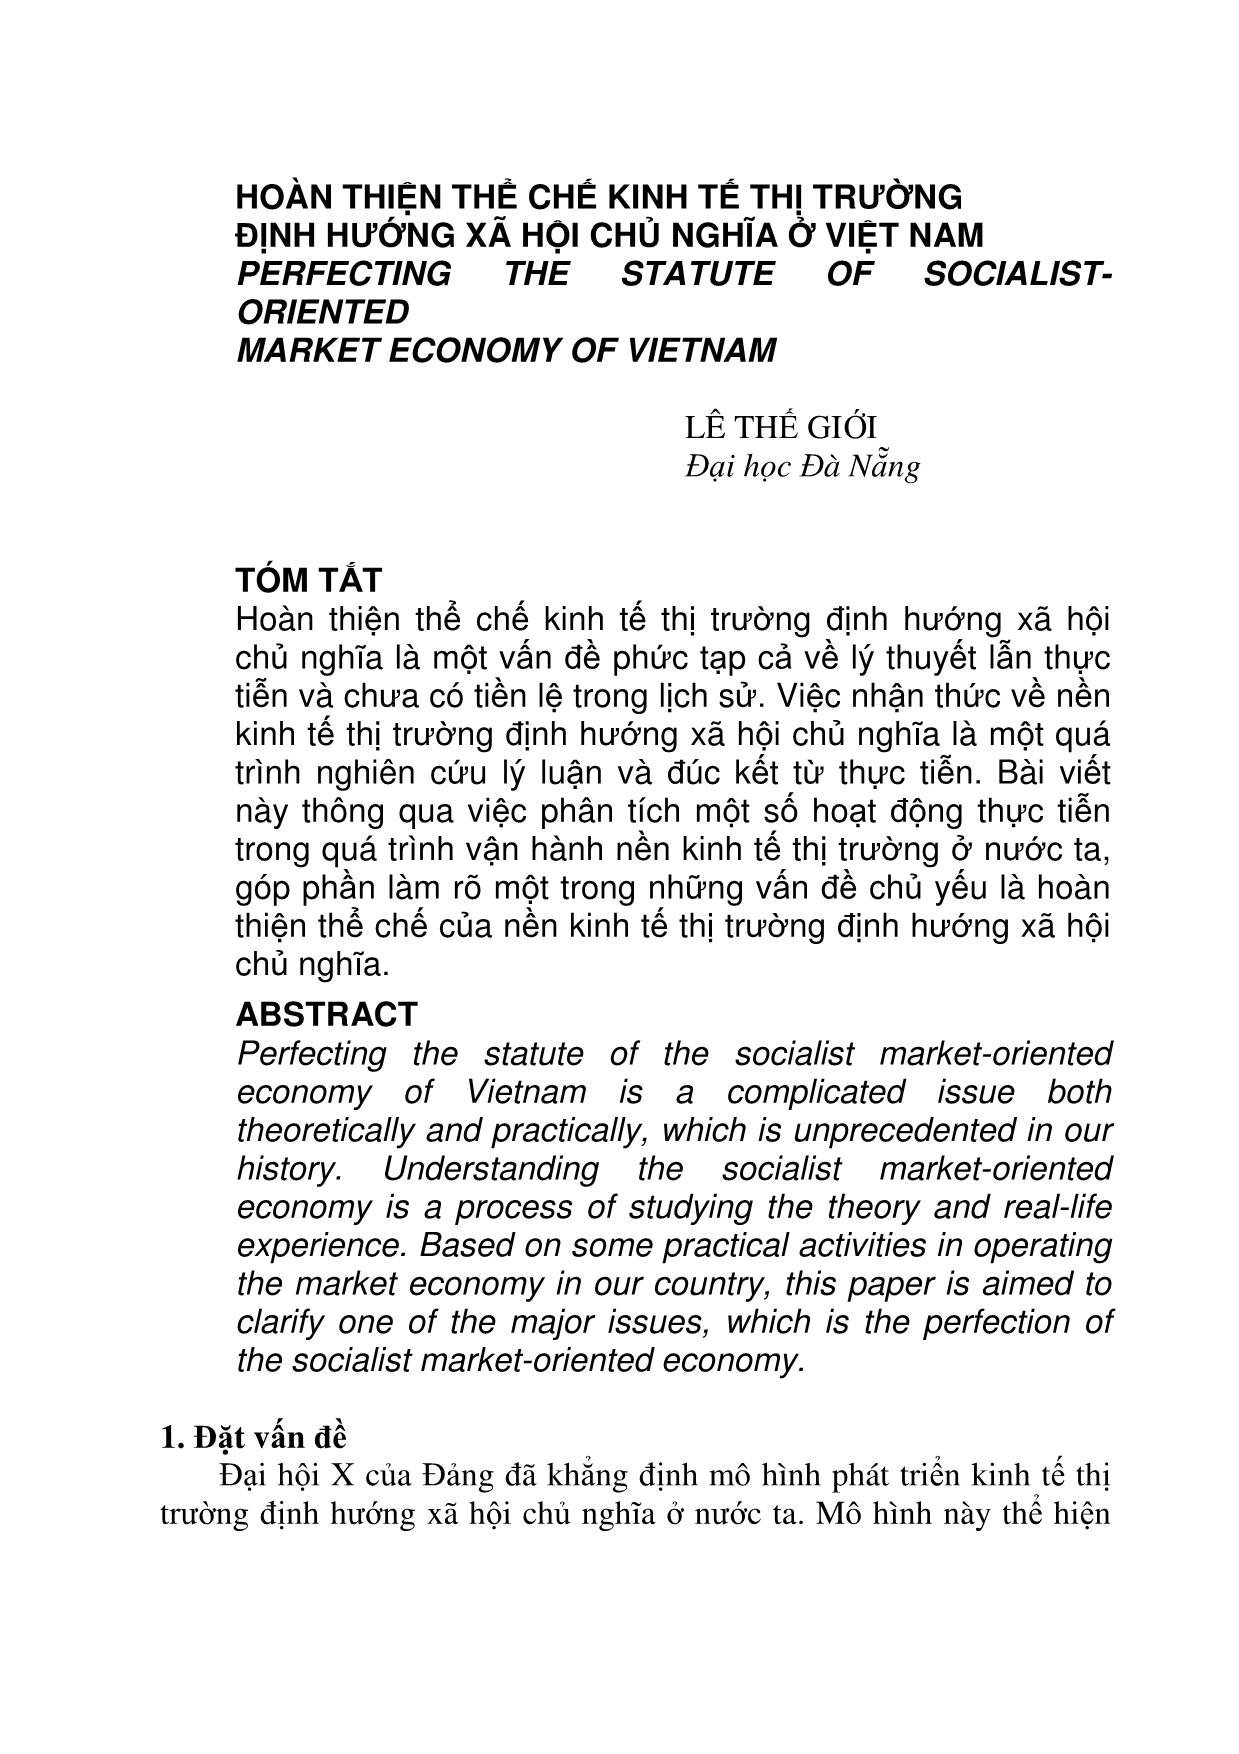 Đề tài Hoàn thiện thể chế kinh tế thị trường định hướng xã hội chủ nghĩa ở Việt Nam trang 1